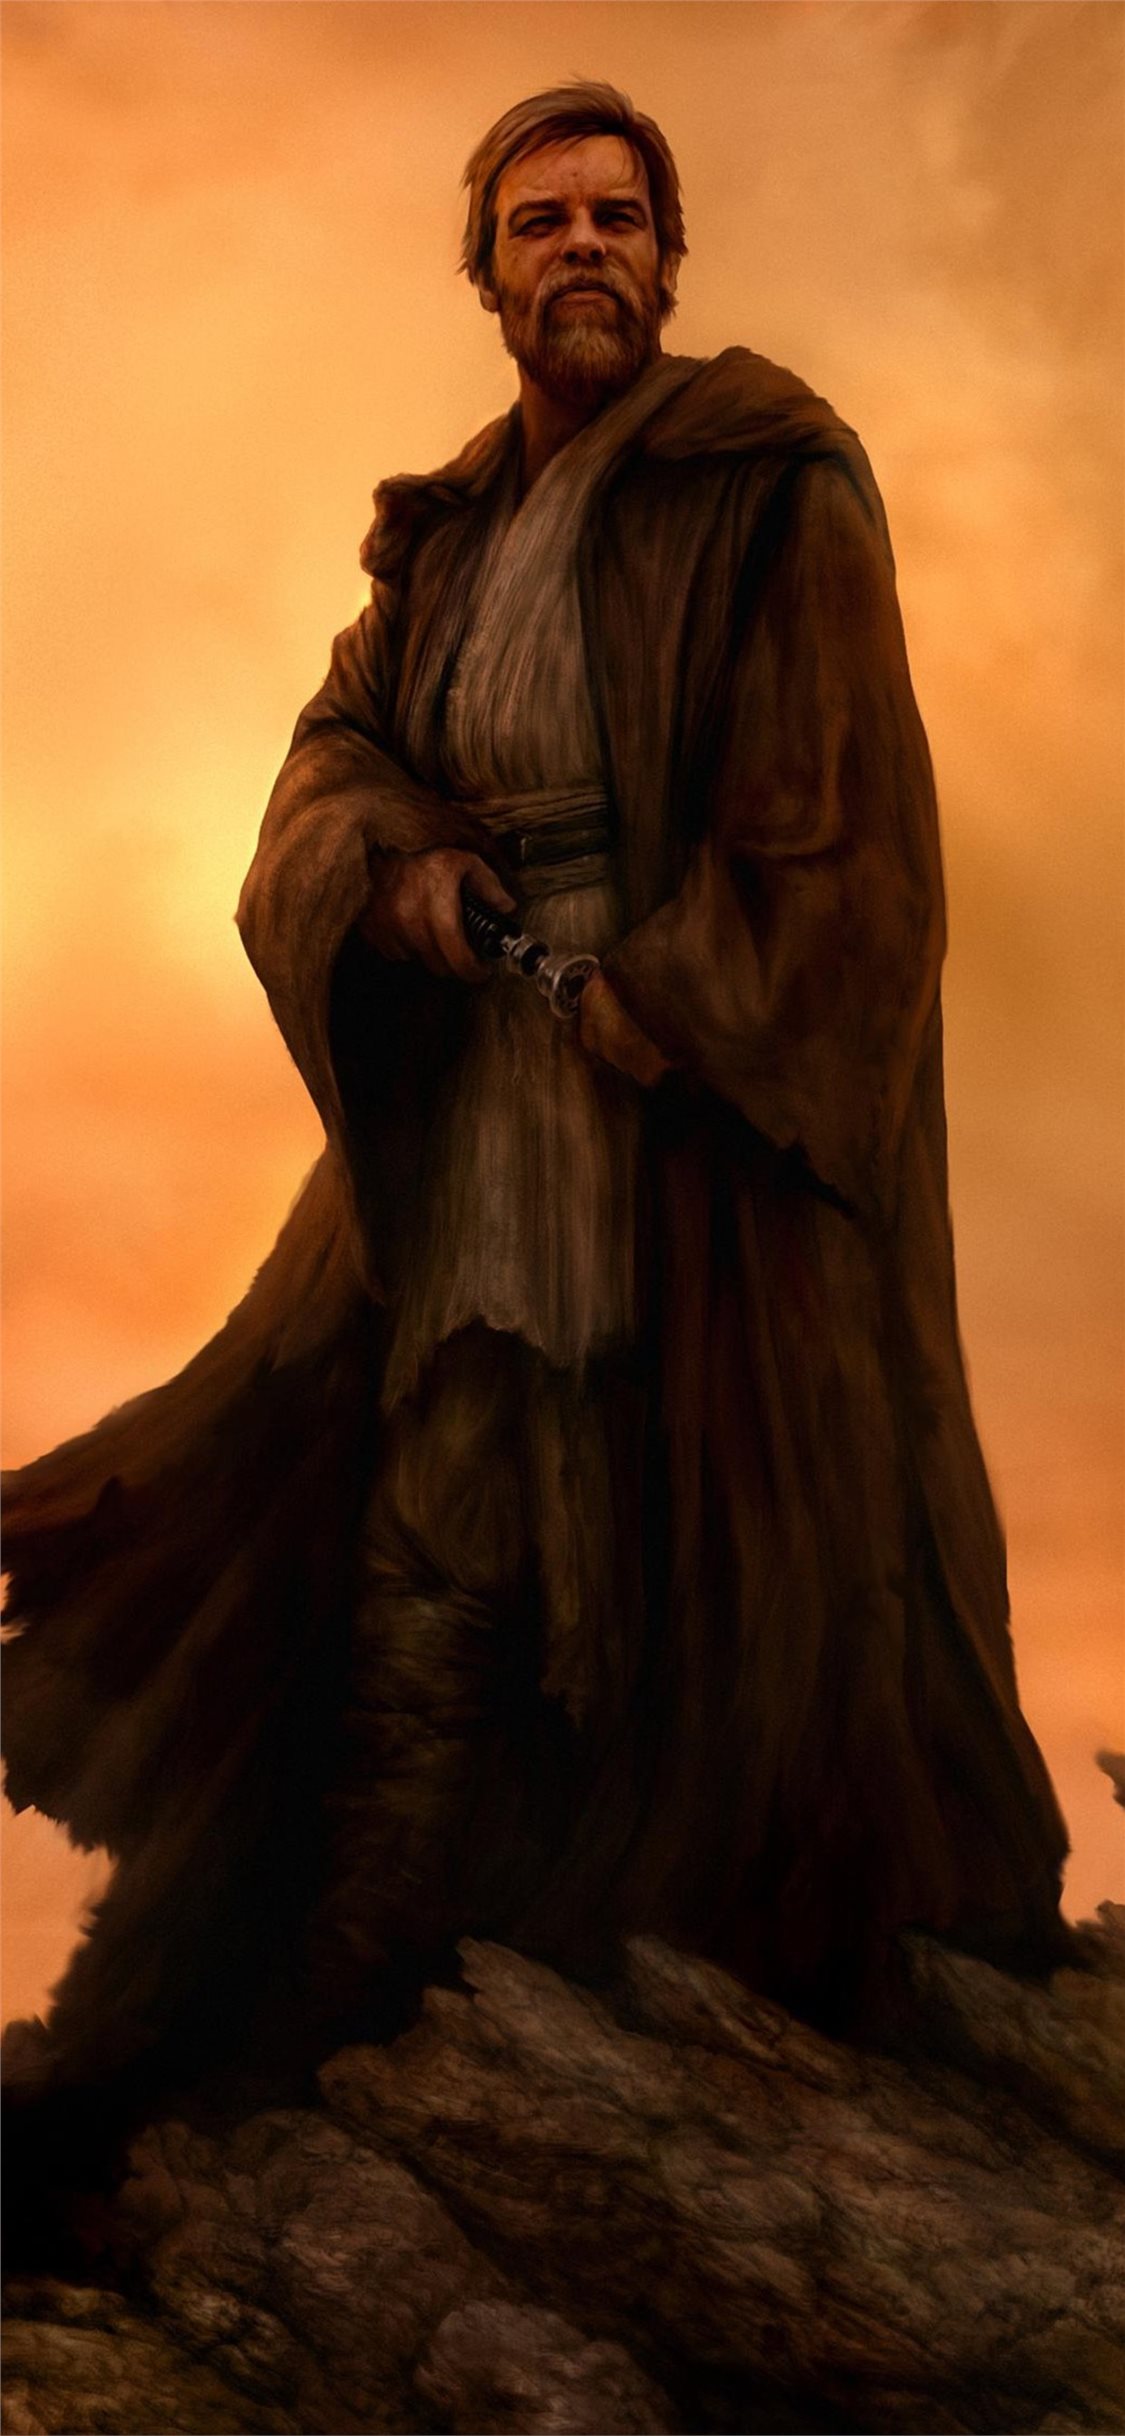 Obi Wan Kenobi Wallpaper iPhone